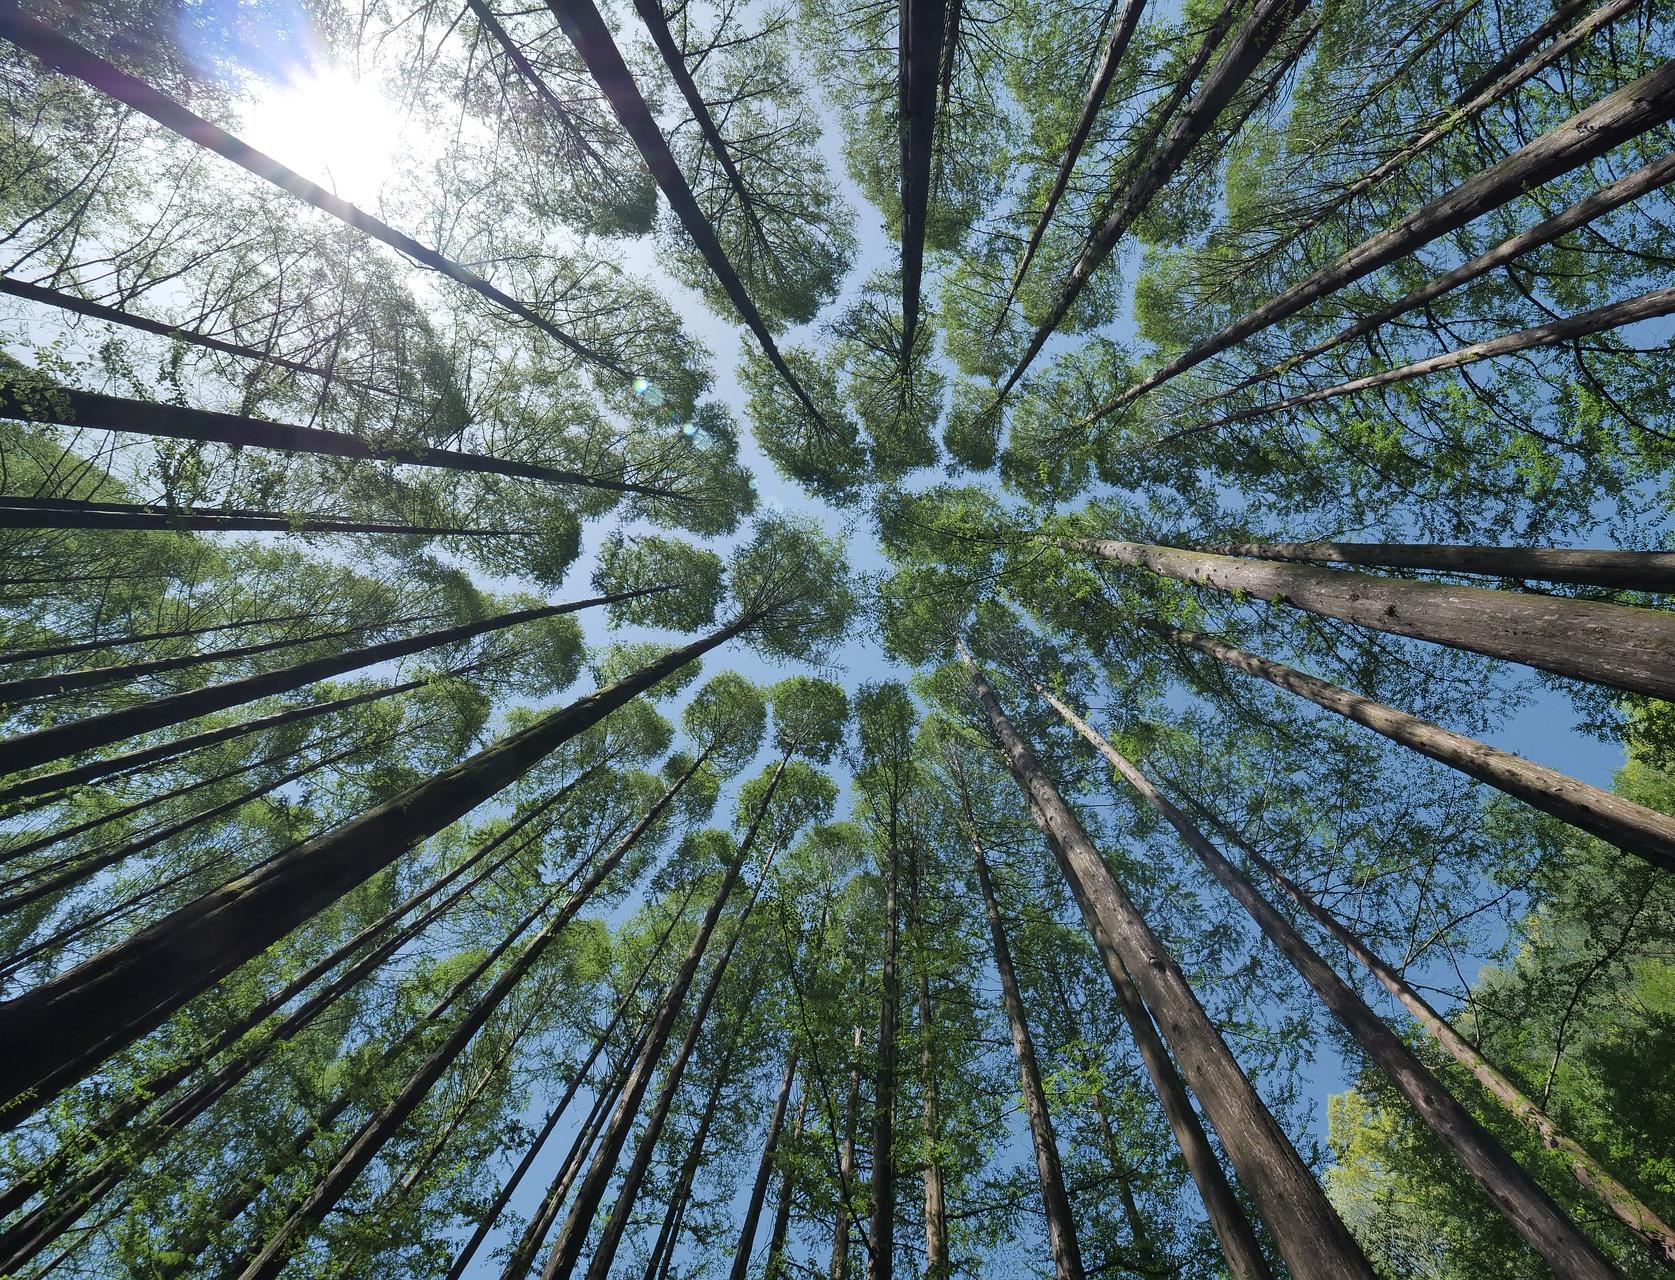 Vsemayki.ru сделали первый промокод, чтобы собрать больше денег на деревья